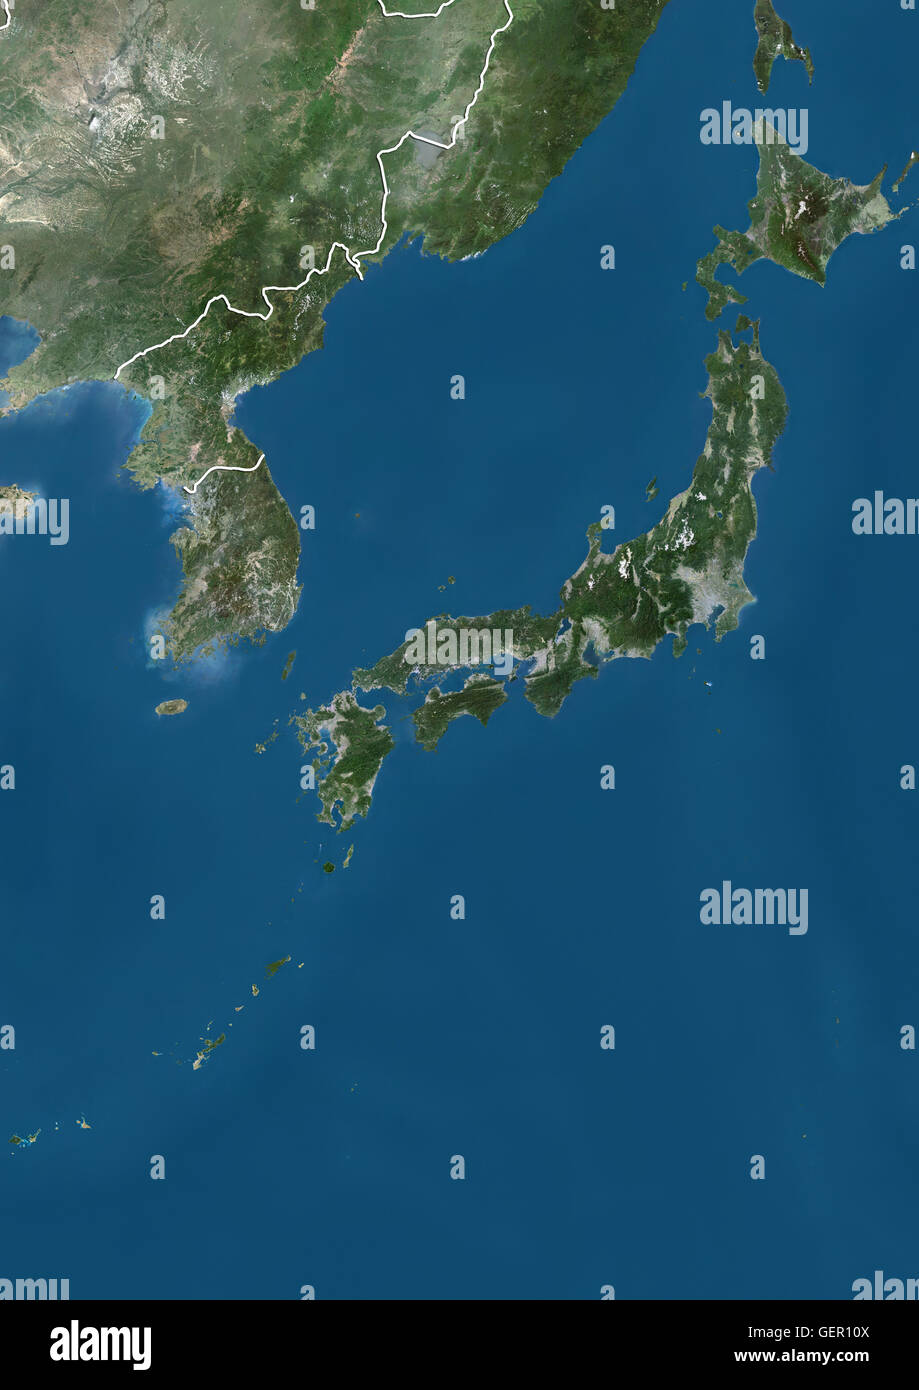 Vista satellitare del Giappone, Corea del Sud e la Corea del Nord (con i confini del paese). Questa immagine è stata elaborata sulla base dei dati acquisiti dai satelliti Landsat. Foto Stock